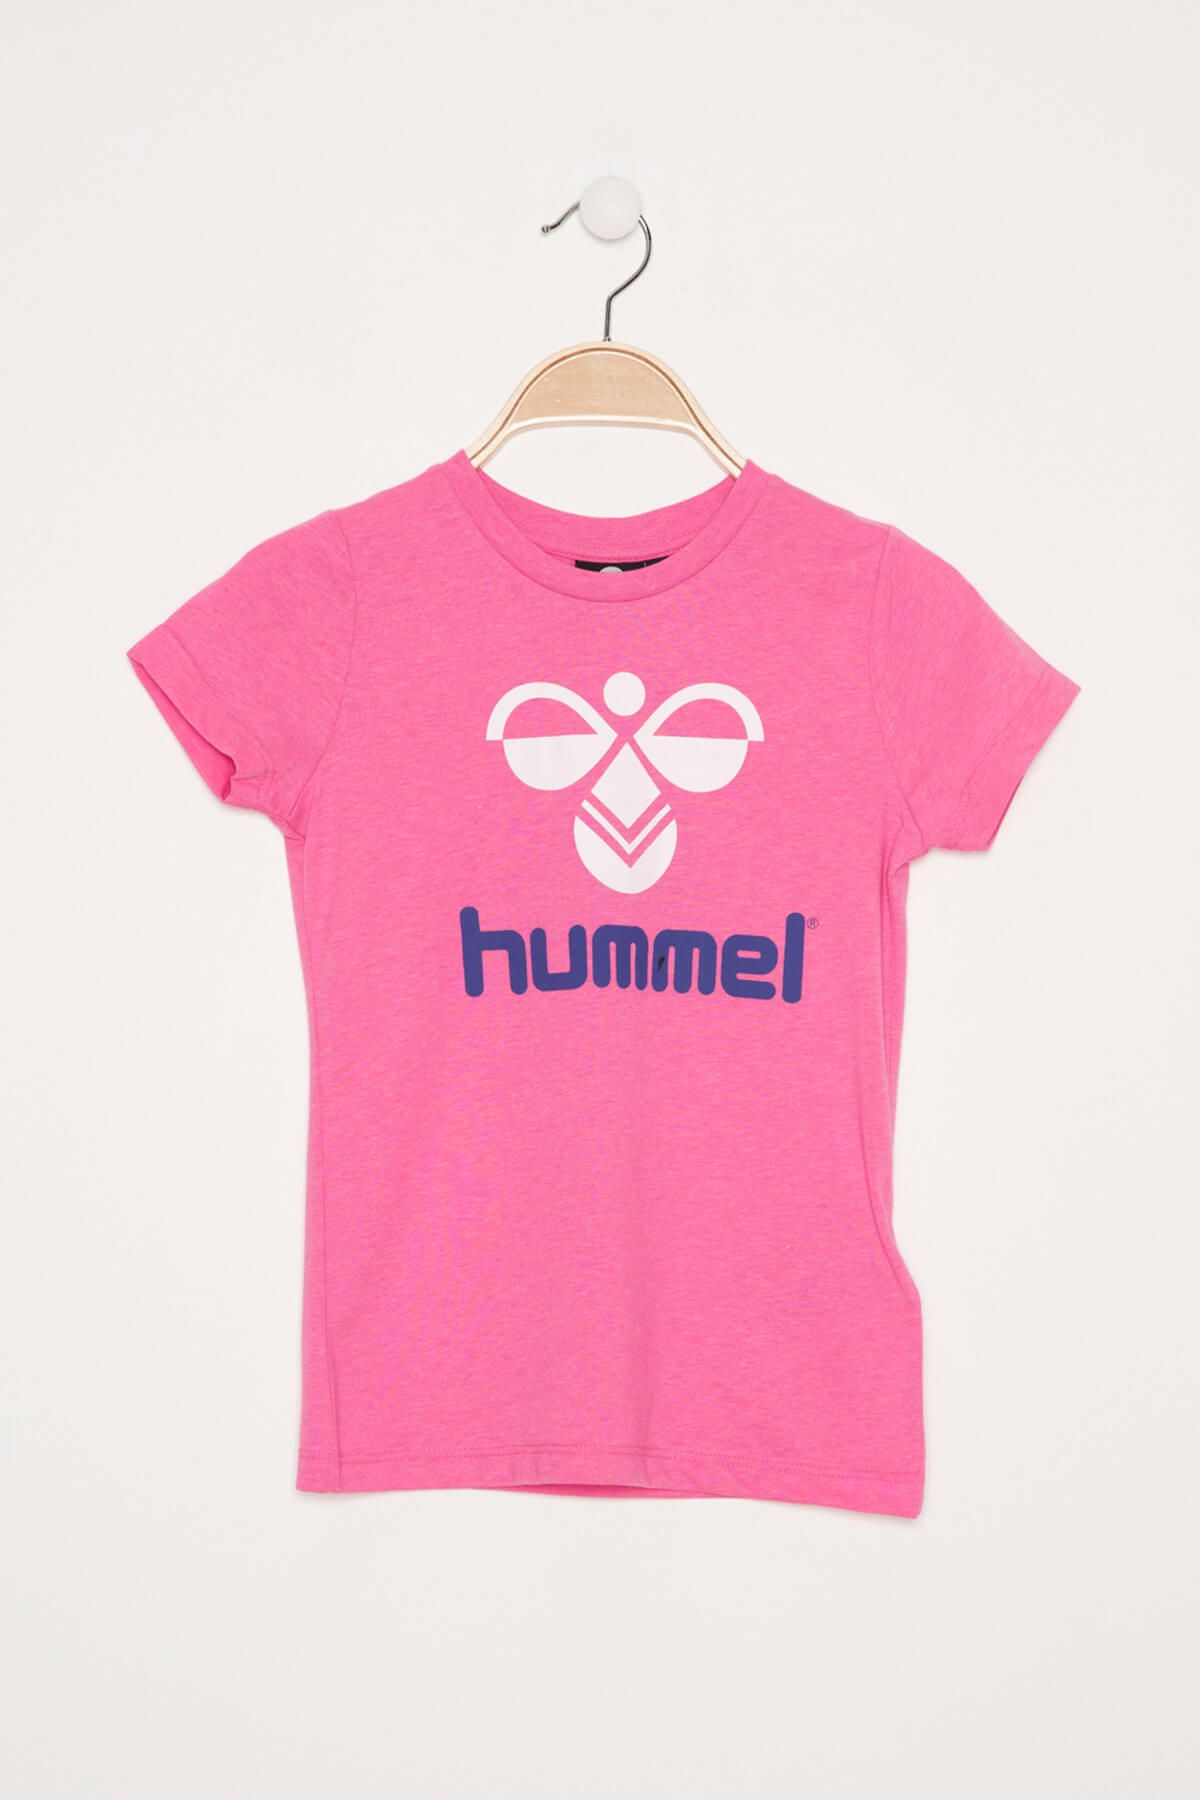 hummel Pembe Kız Çocuk T-shirt